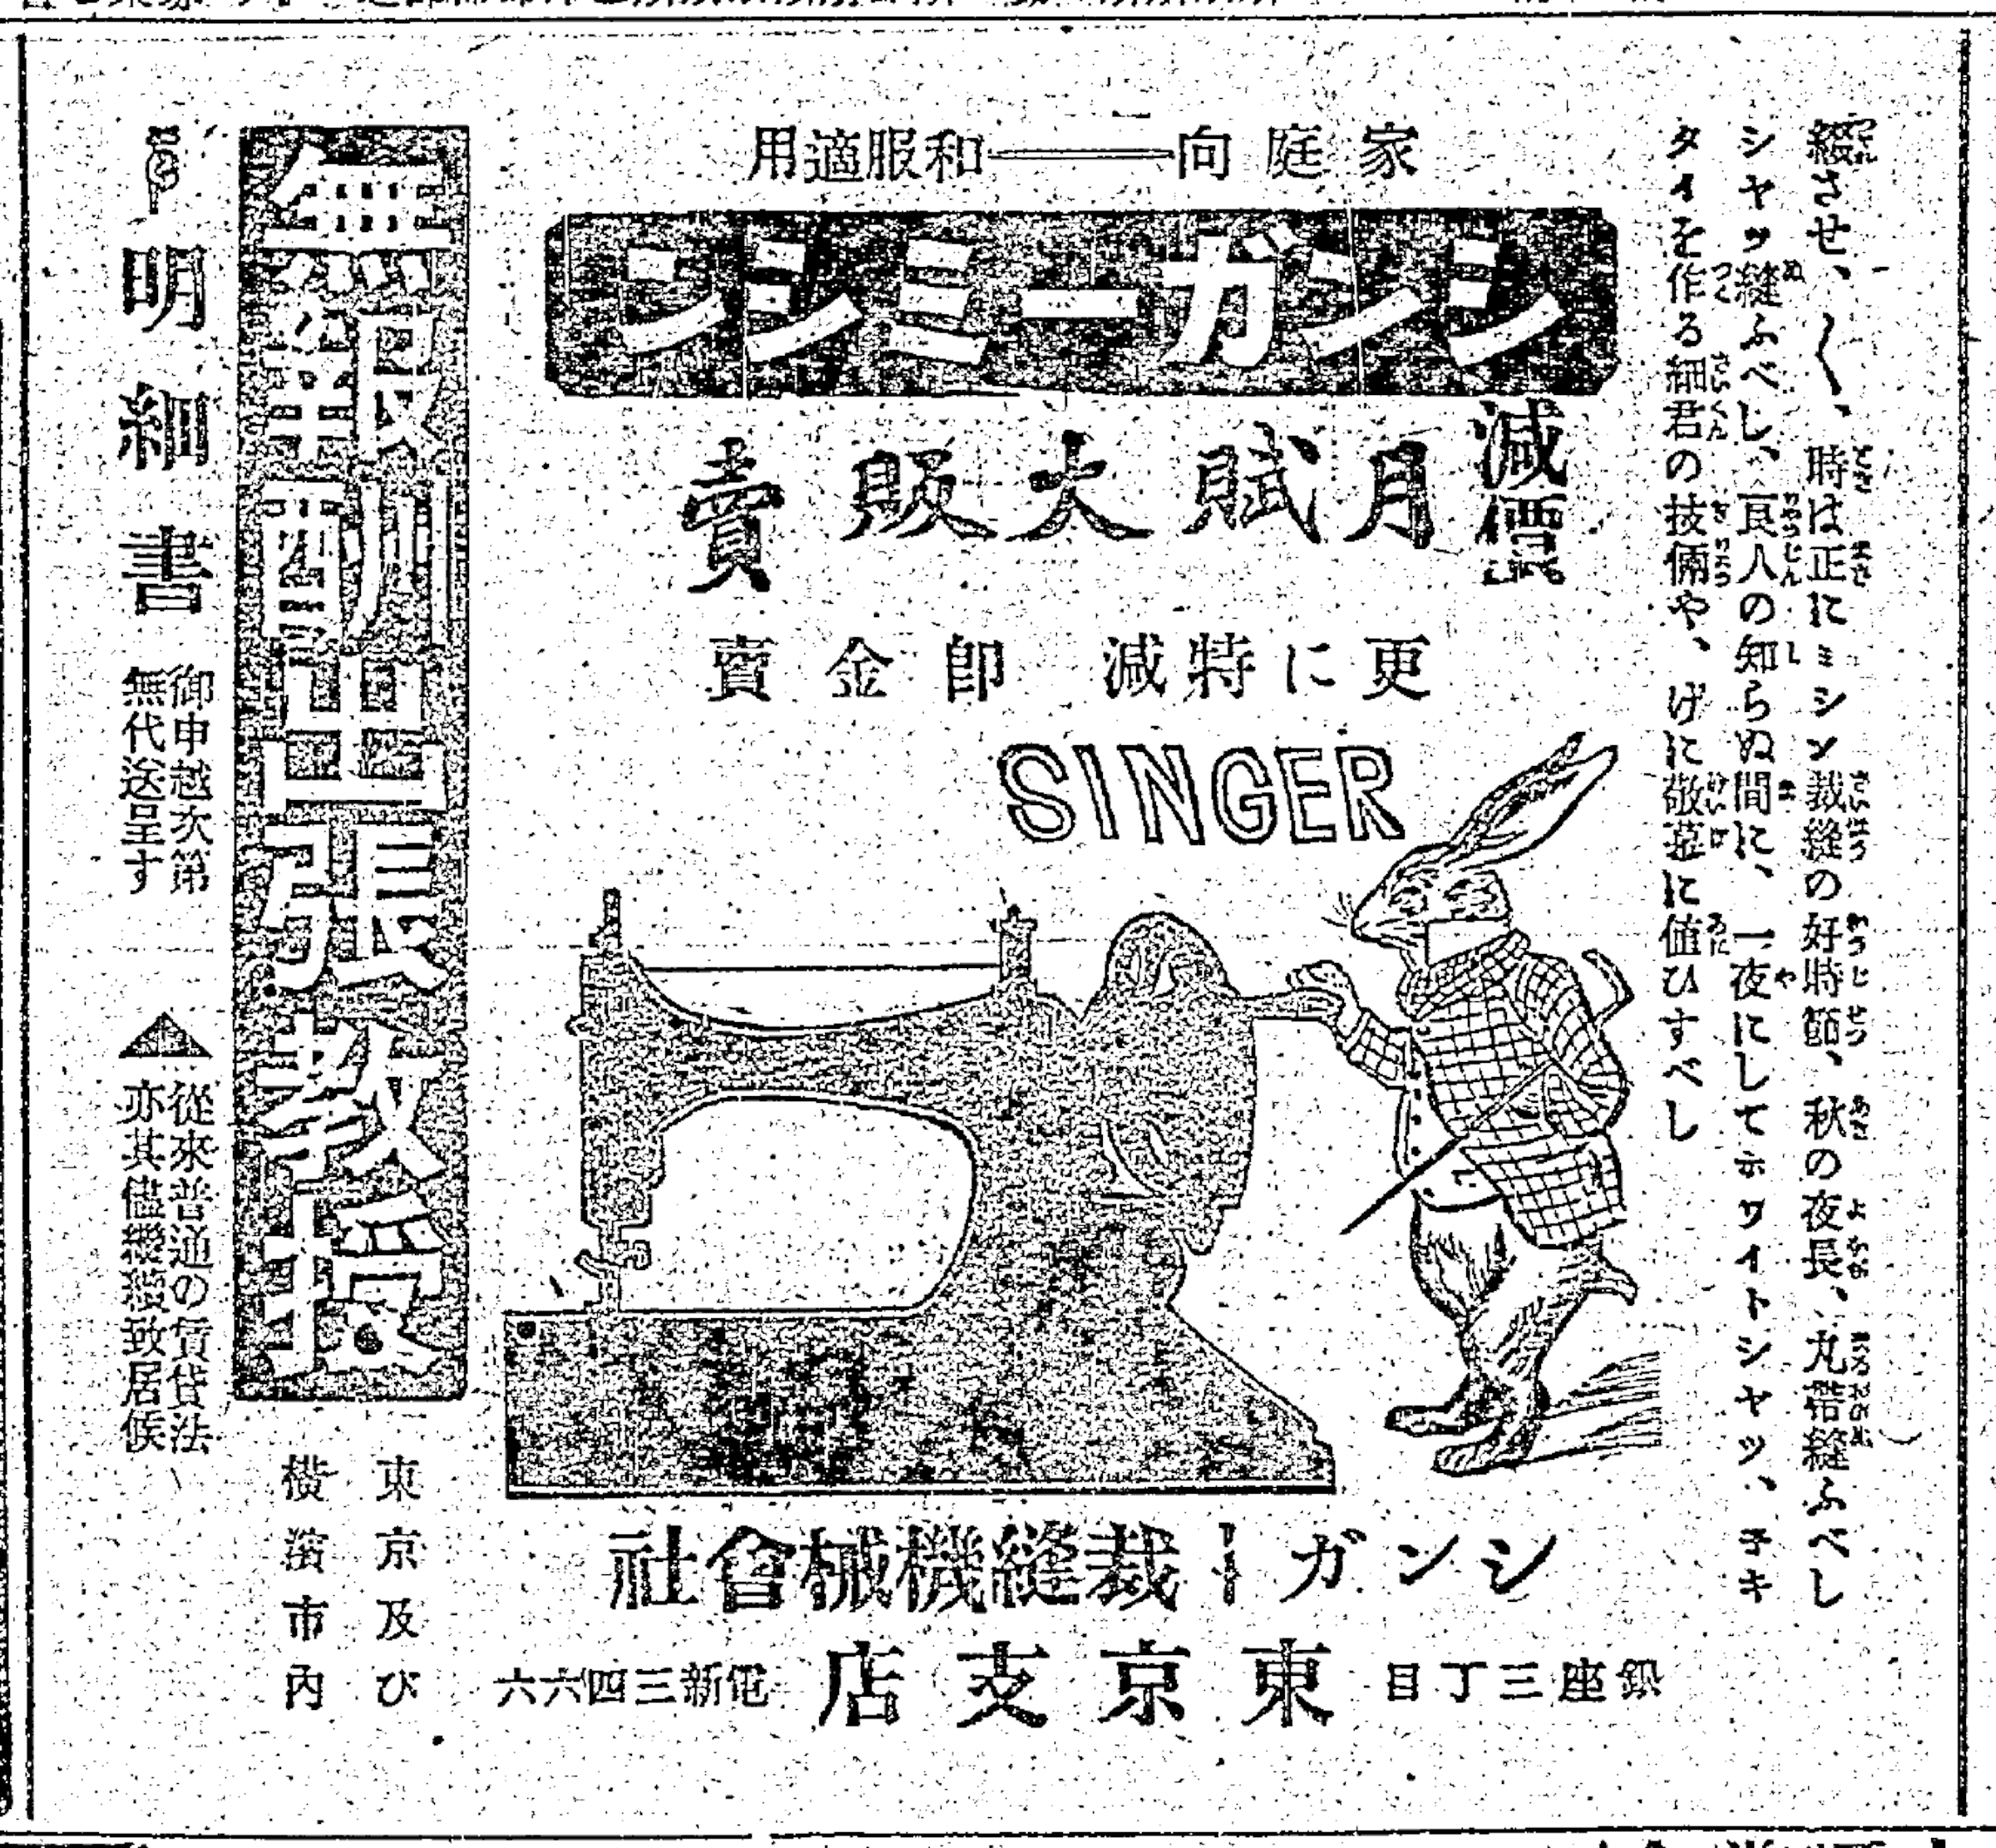 画像: 『東京朝日新聞』1907年11月18日朝刊1頁